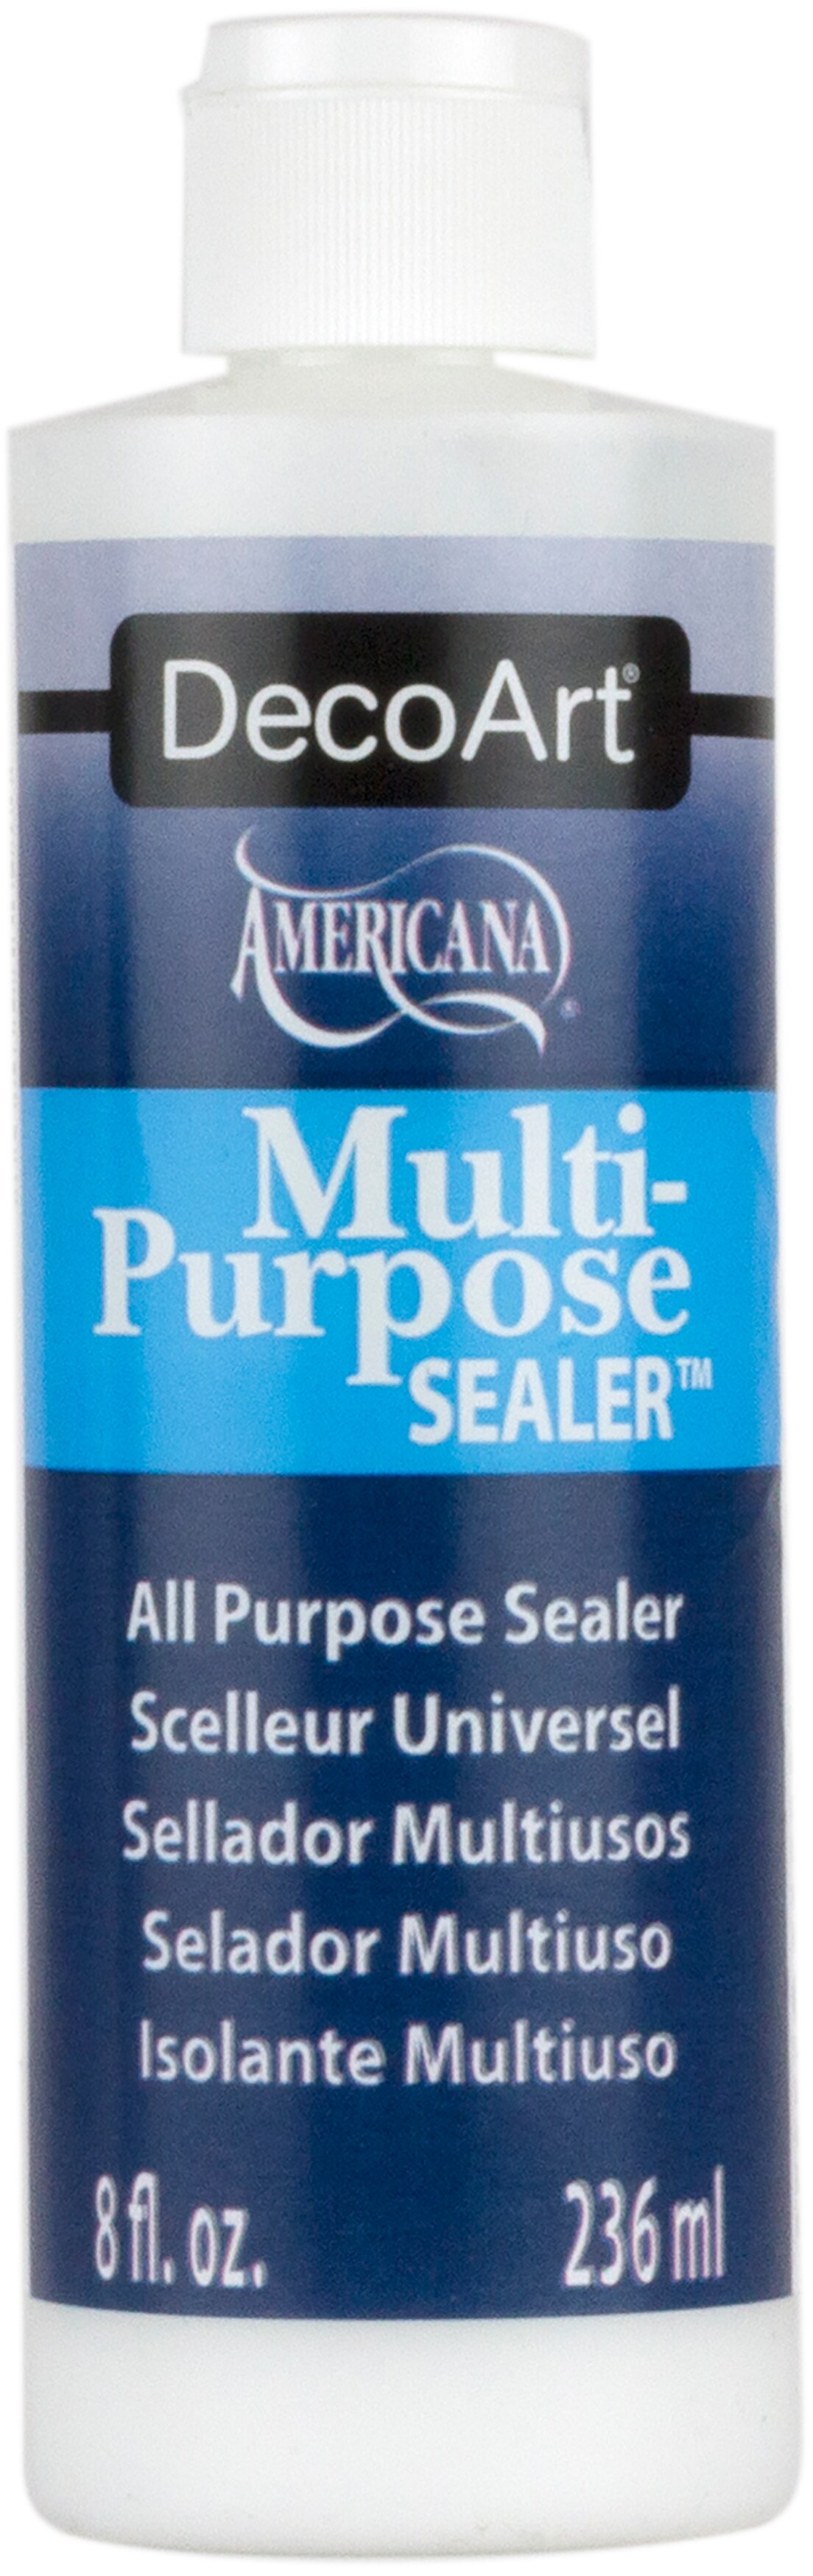 DecoArt Americana Multi-Purpose Seale-8oz